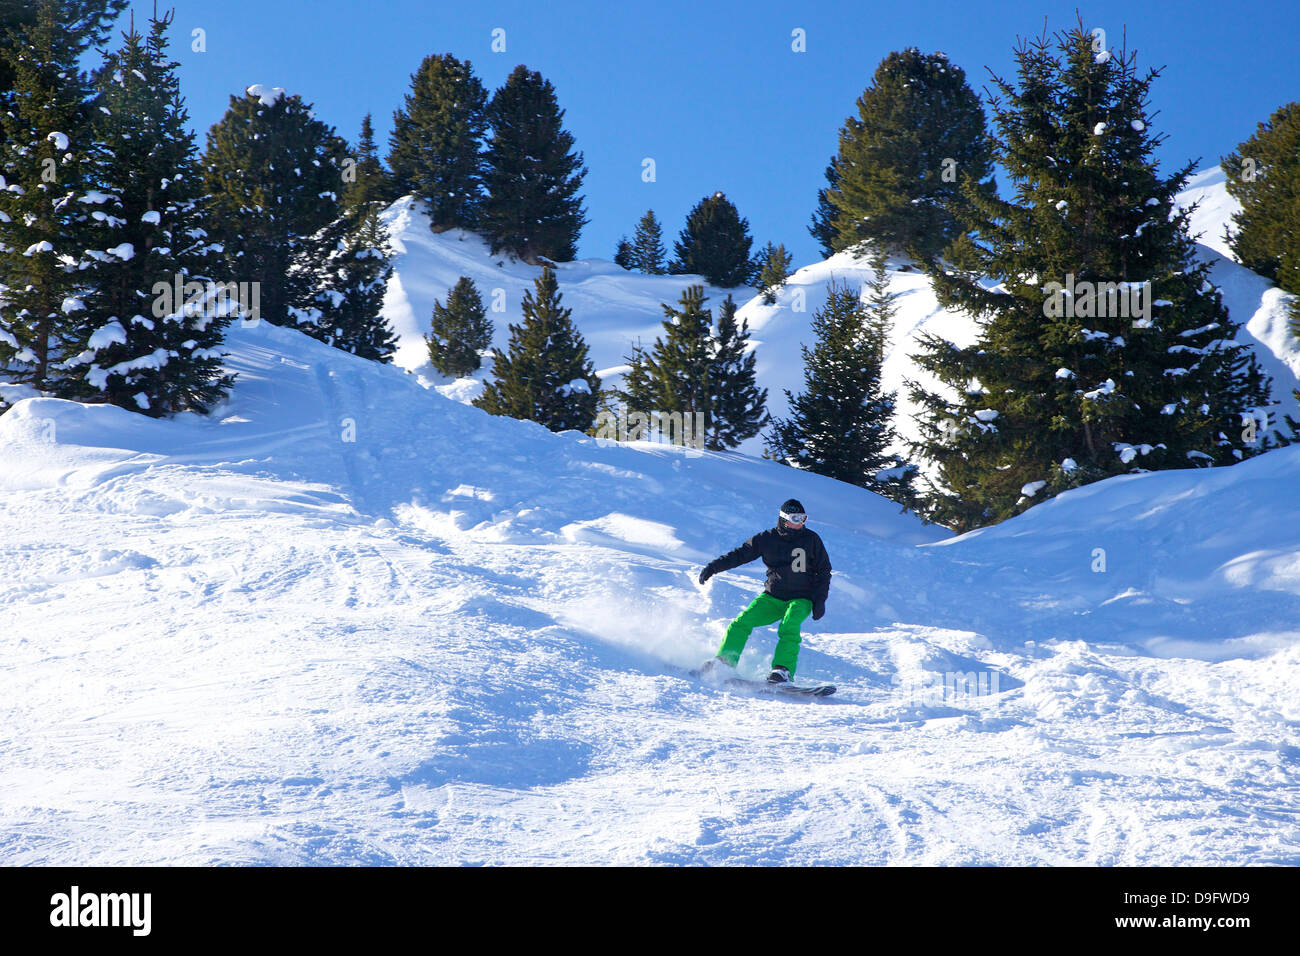 Snowboard Piste am frühen Morgen im Winter, La Plagne, Französische Alpen, Frankreich Stockfoto